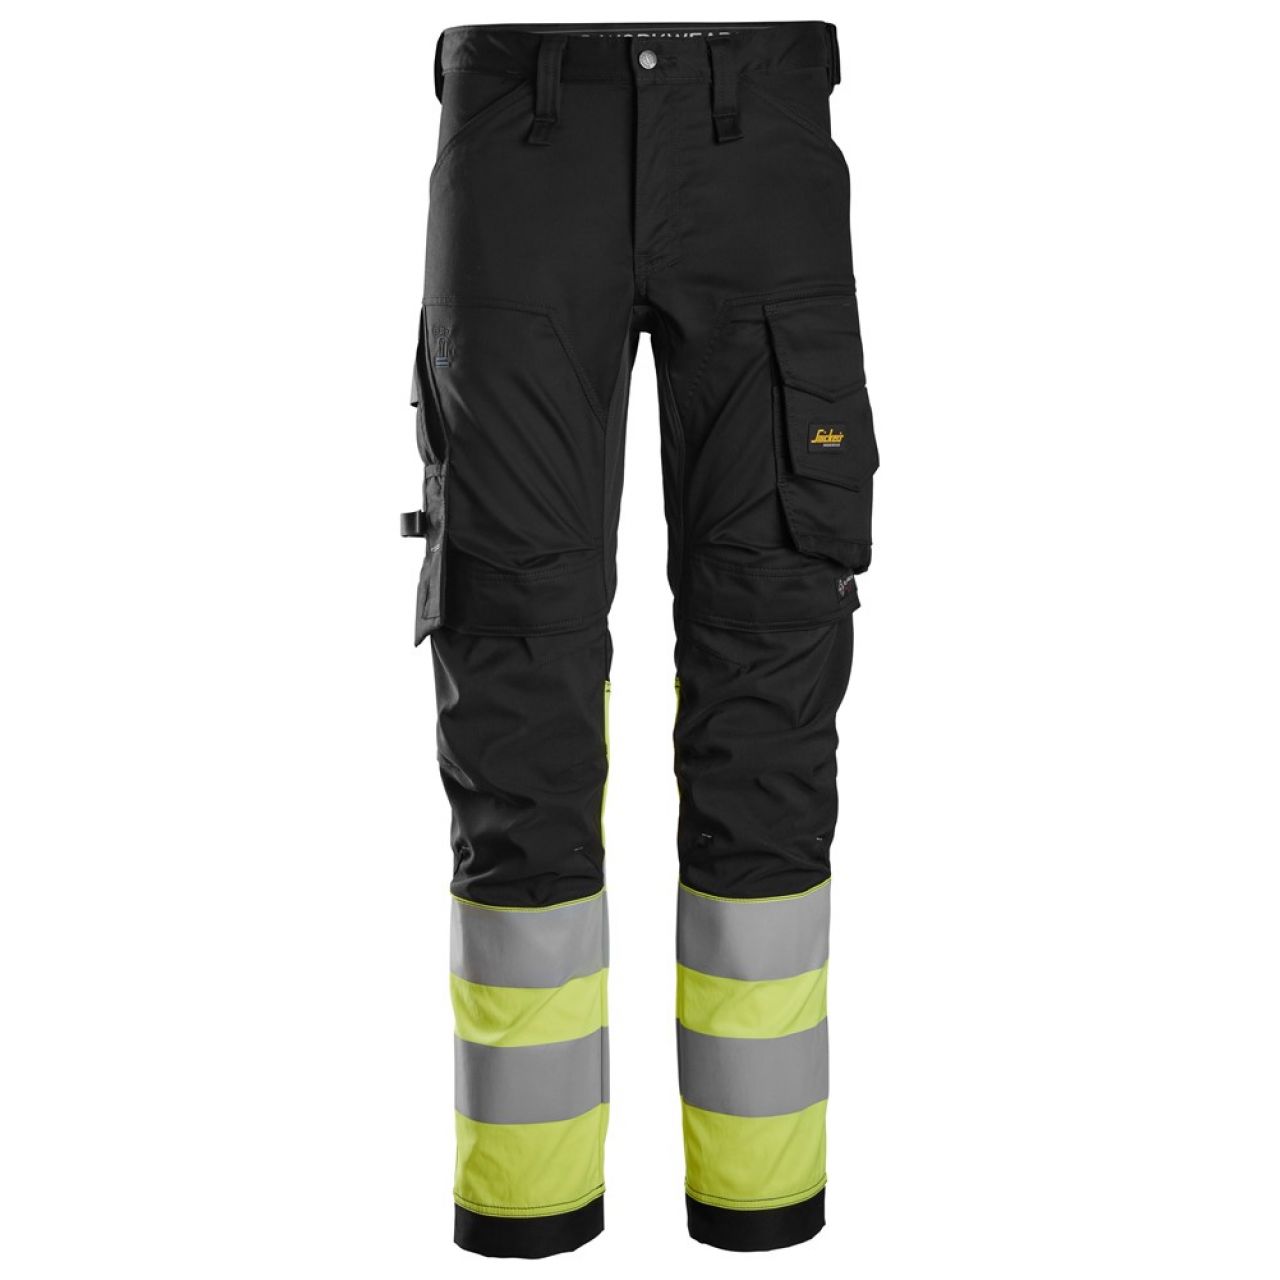 6334 Pantalones largos de trabajo elásticos de alta visibilidad clase 1 negro-amarillo talla 88